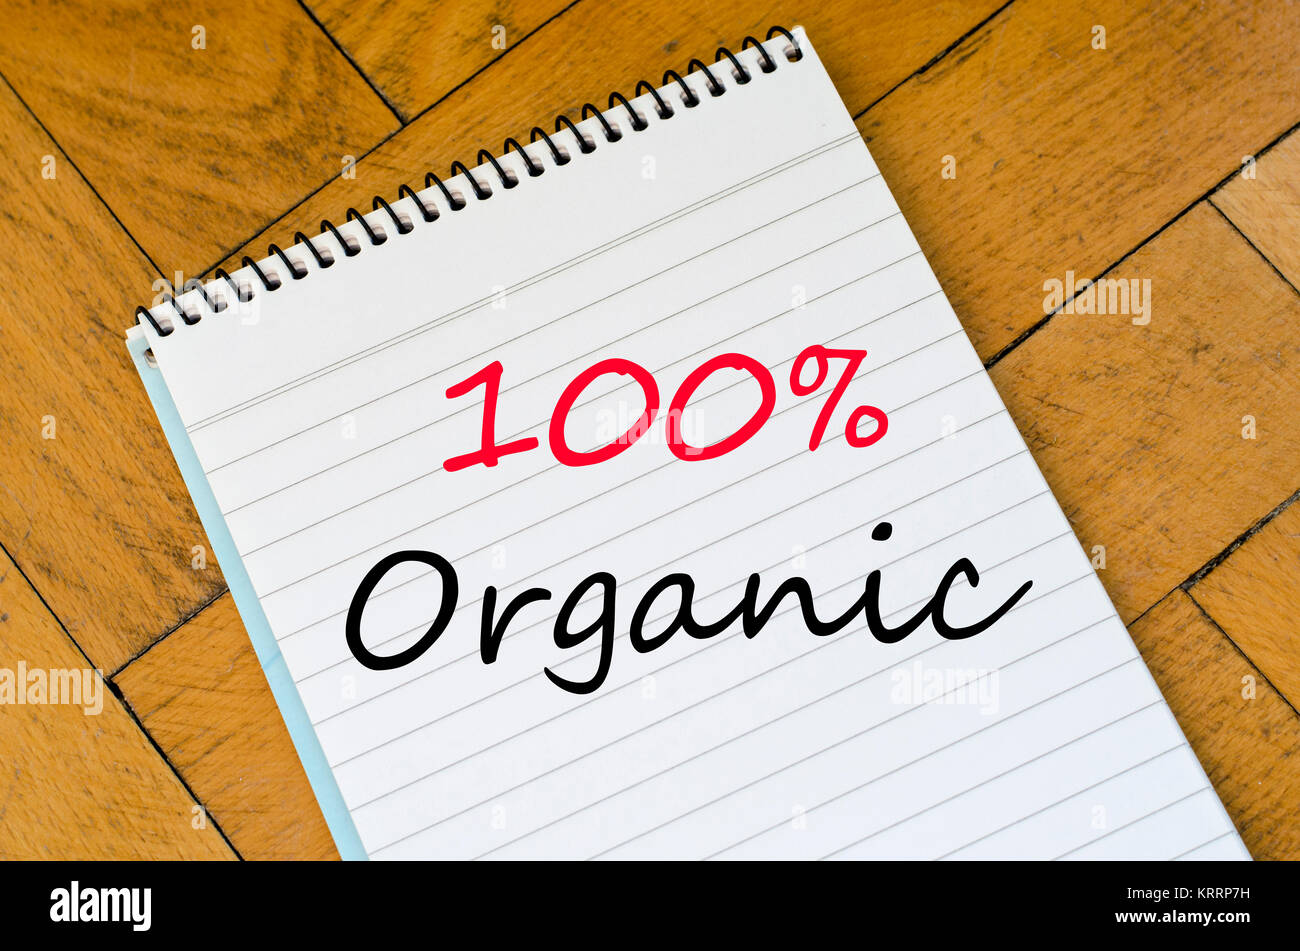 Concepto 100% orgánicos en portátiles Foto de stock